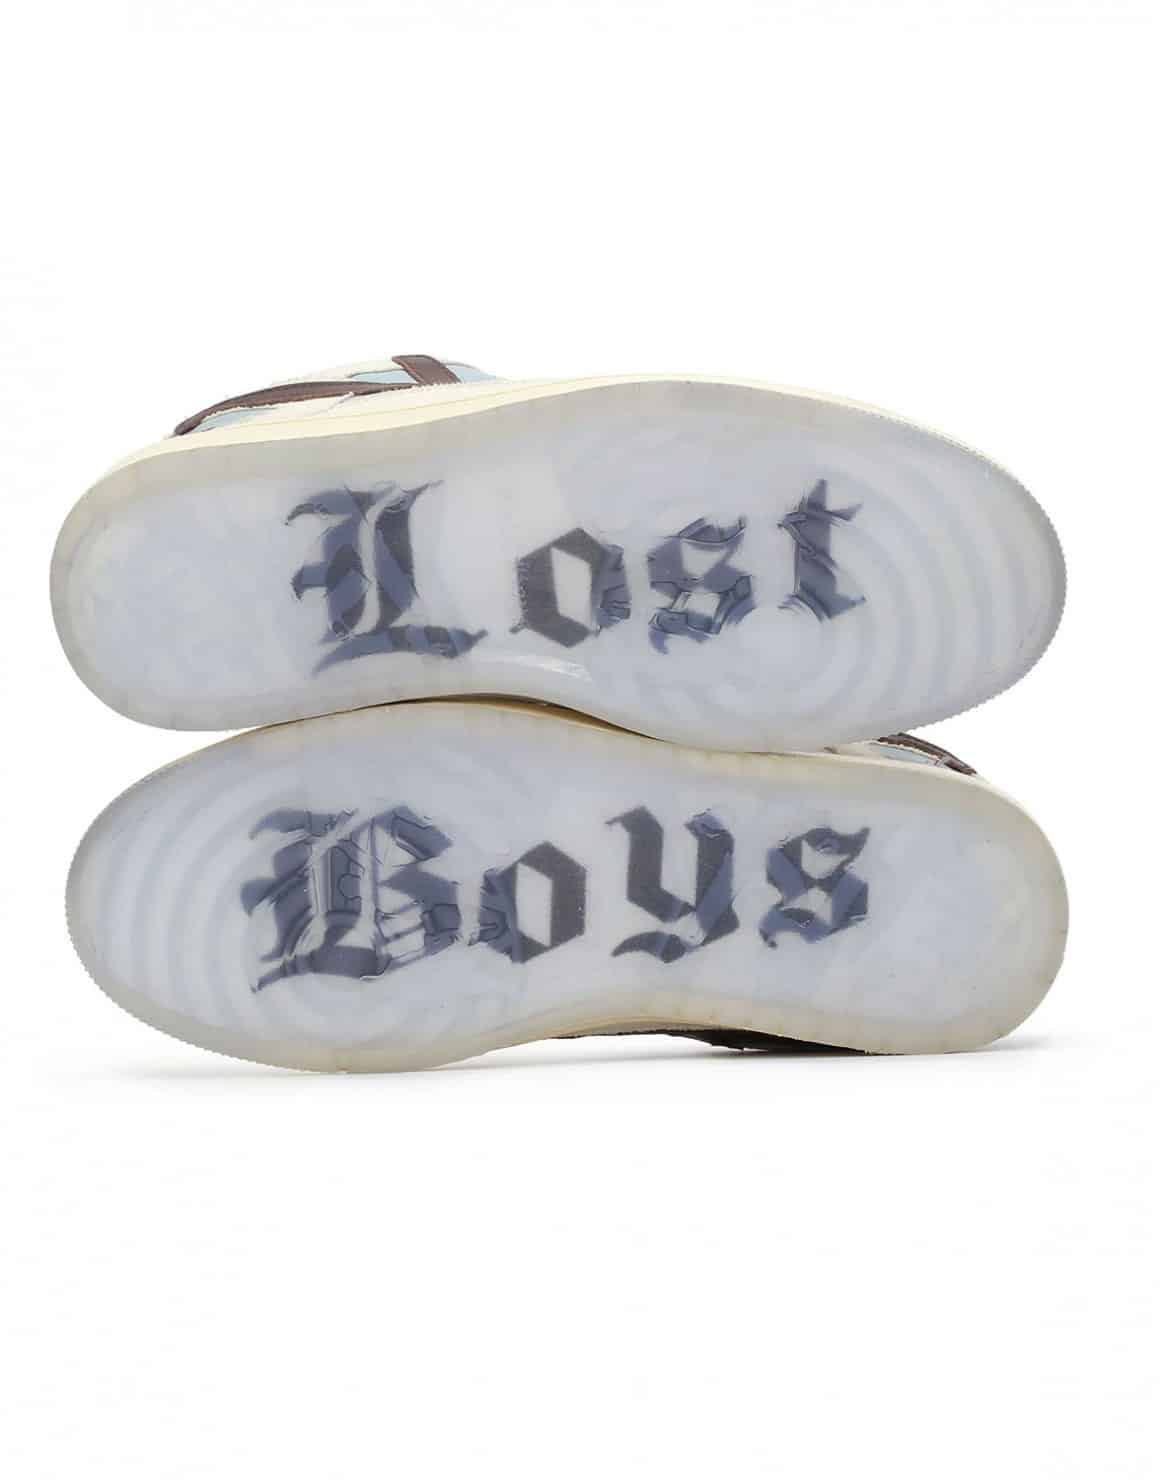 lost boys tony : Cupid